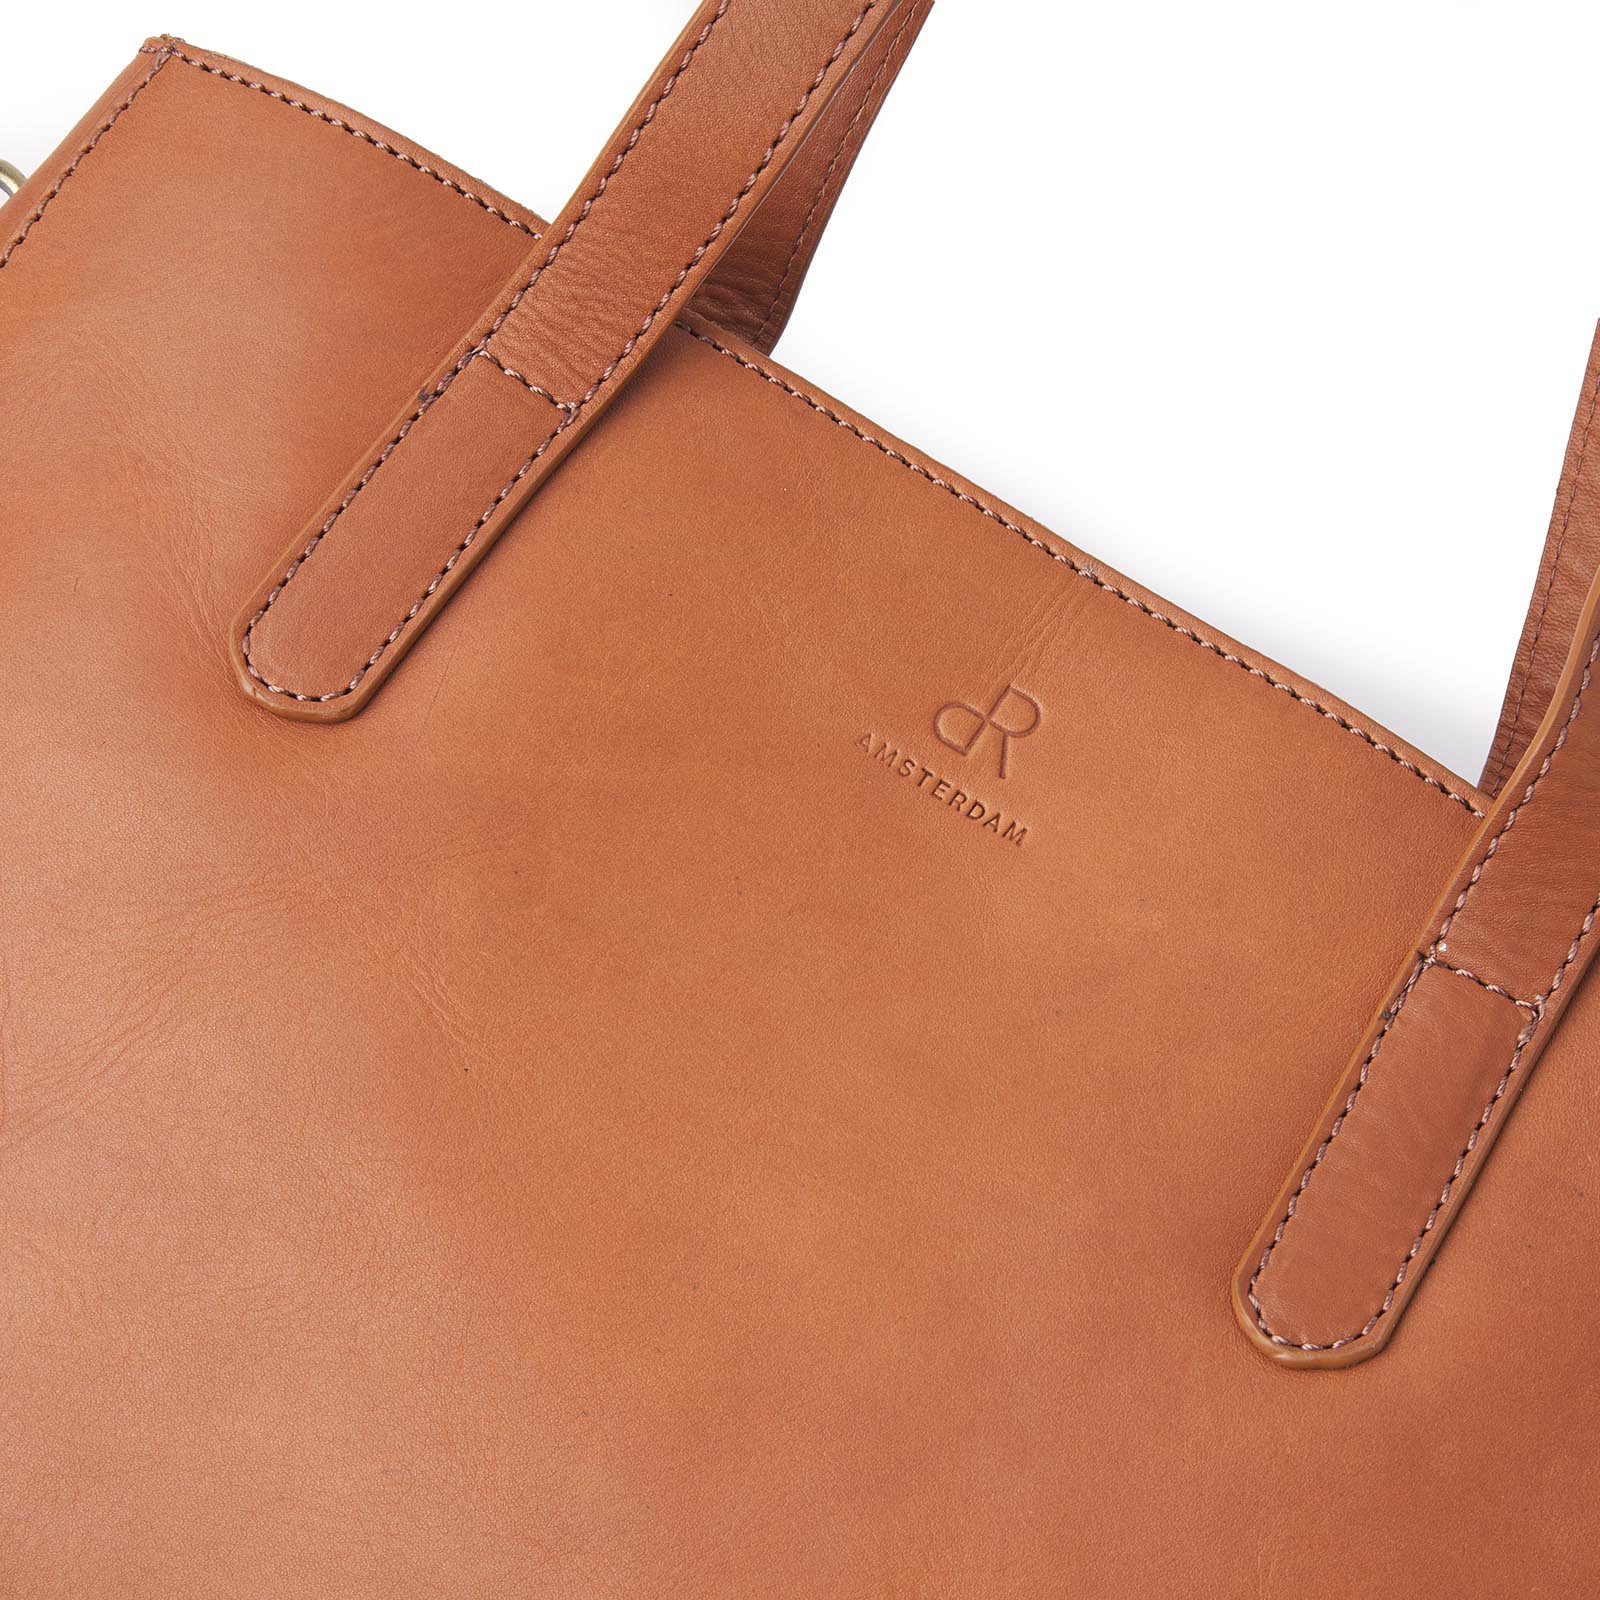 Närbild på brun handväska